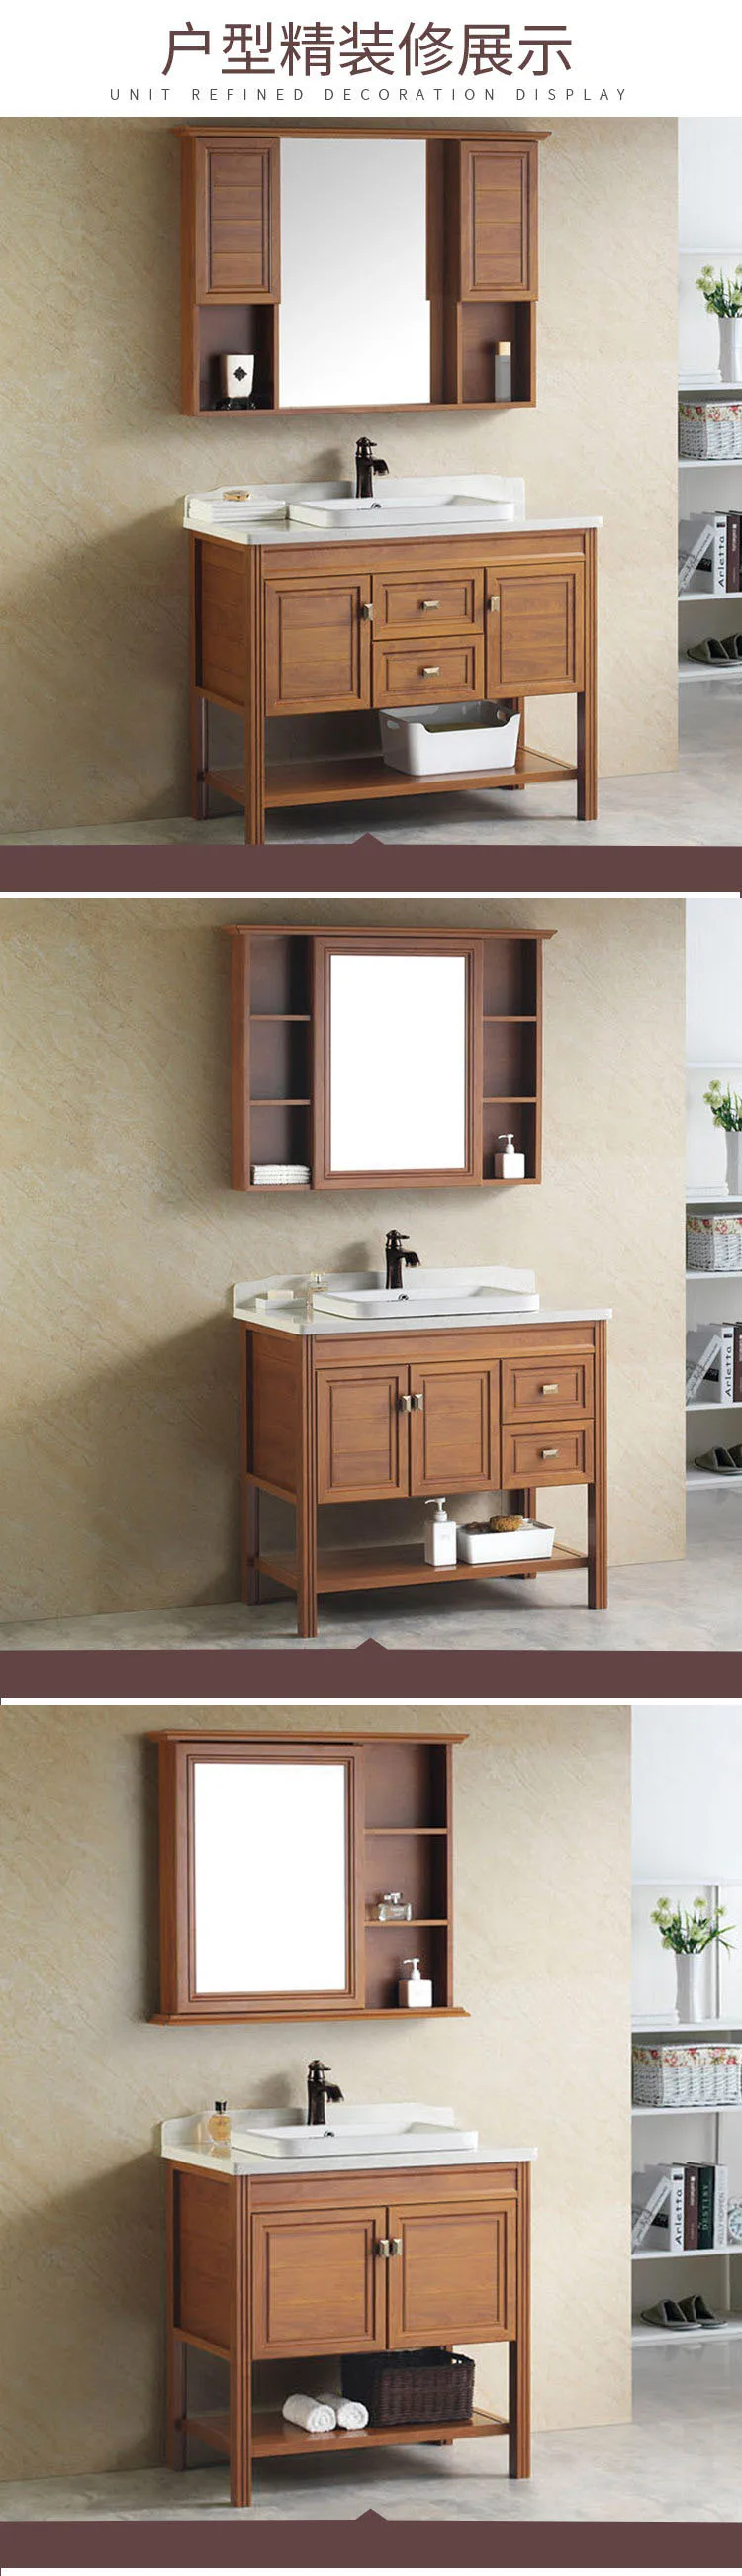 Free standing European style bathroom vanity wetroom Cabinets